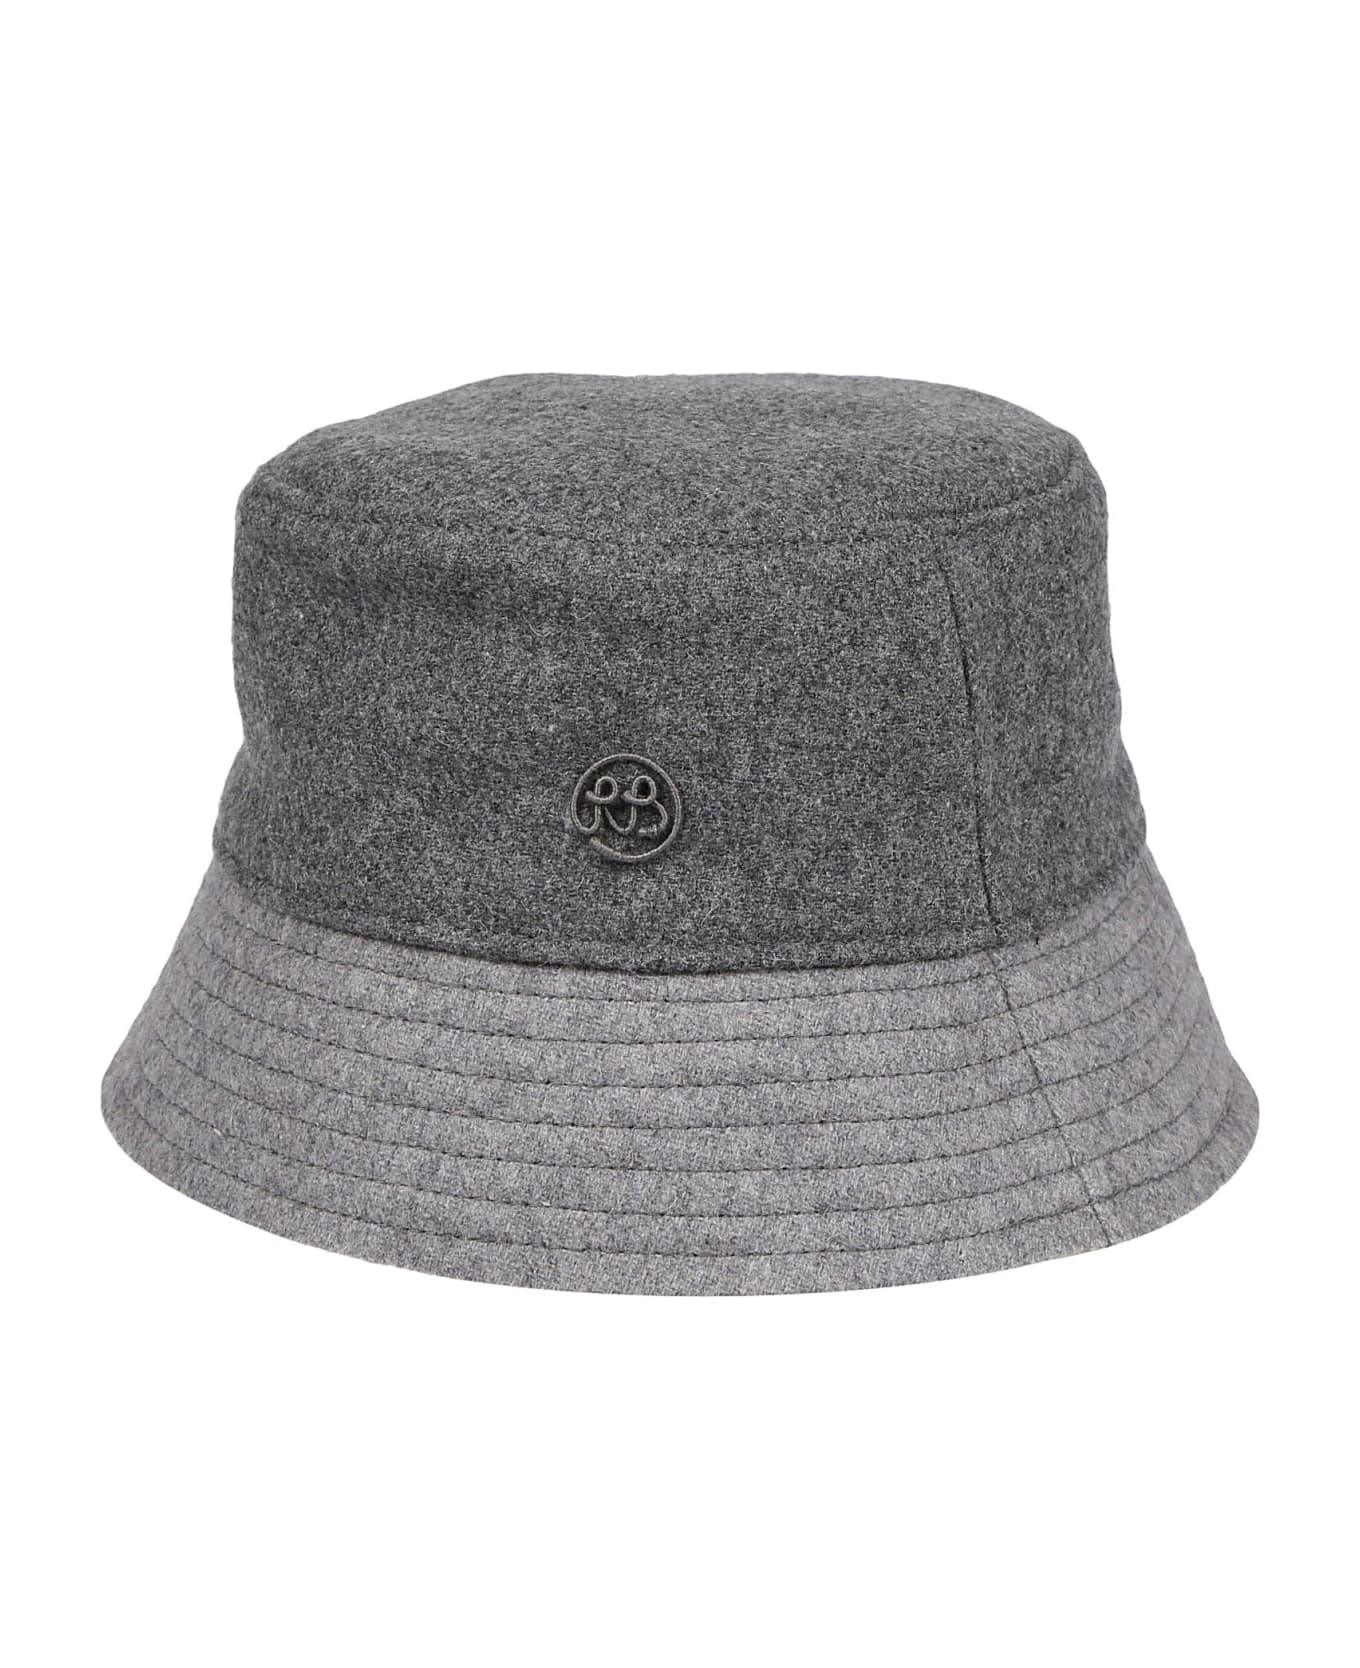 Ruslan Baginskiy Bucket Hat - Multicolor Grey